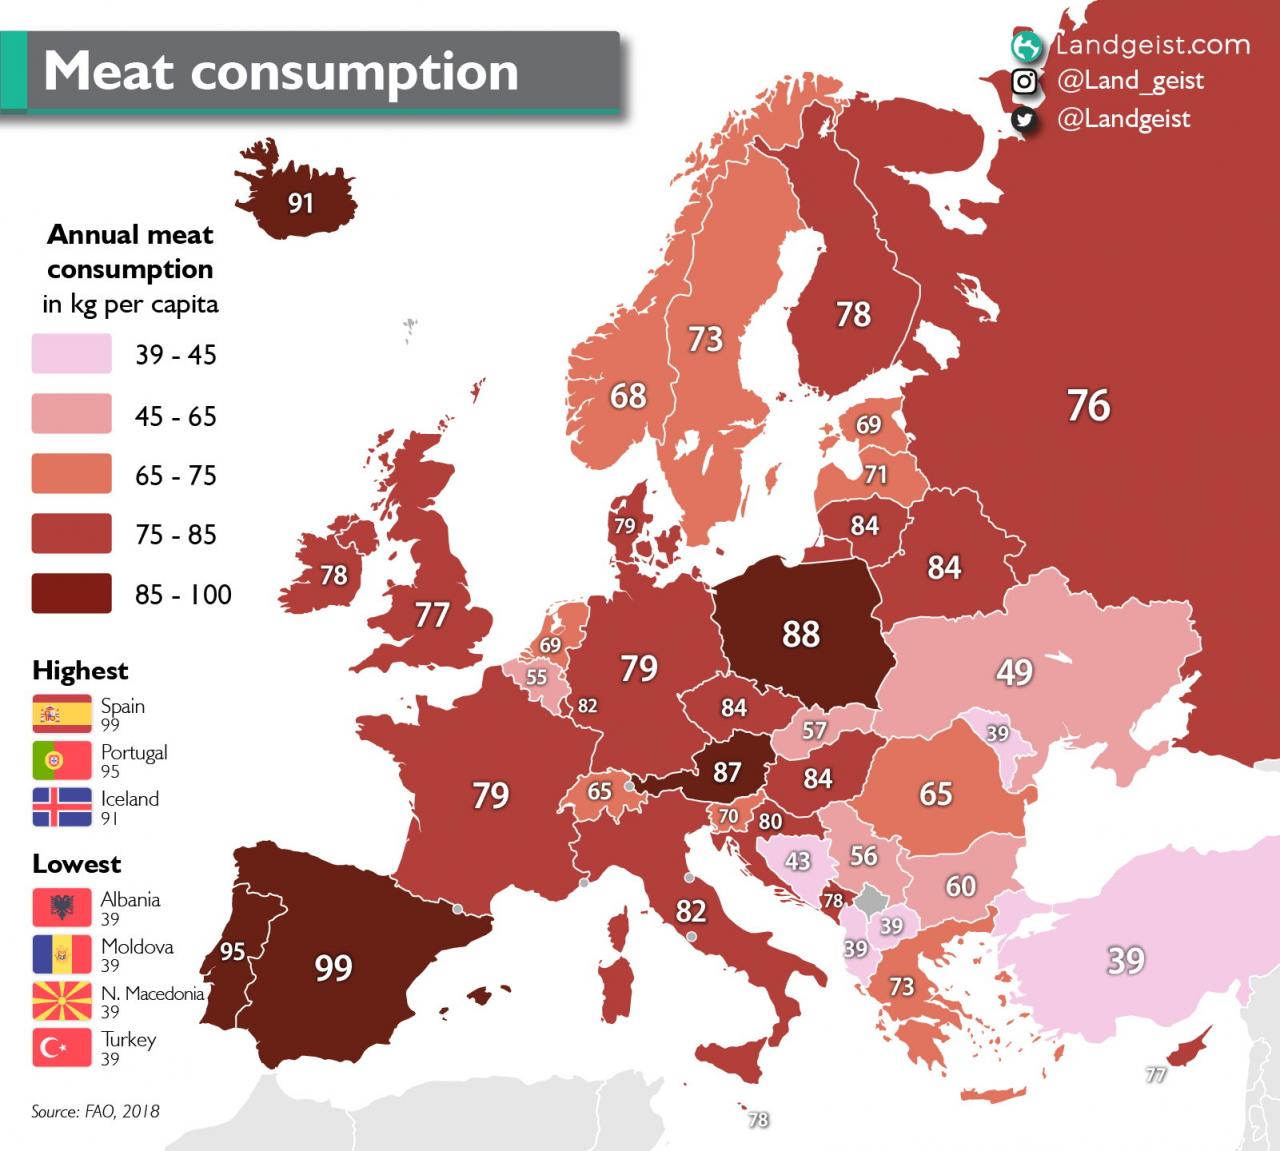 Os maiores consumidores de carne são Espanha (99), Portugal (95), Islândia (91)